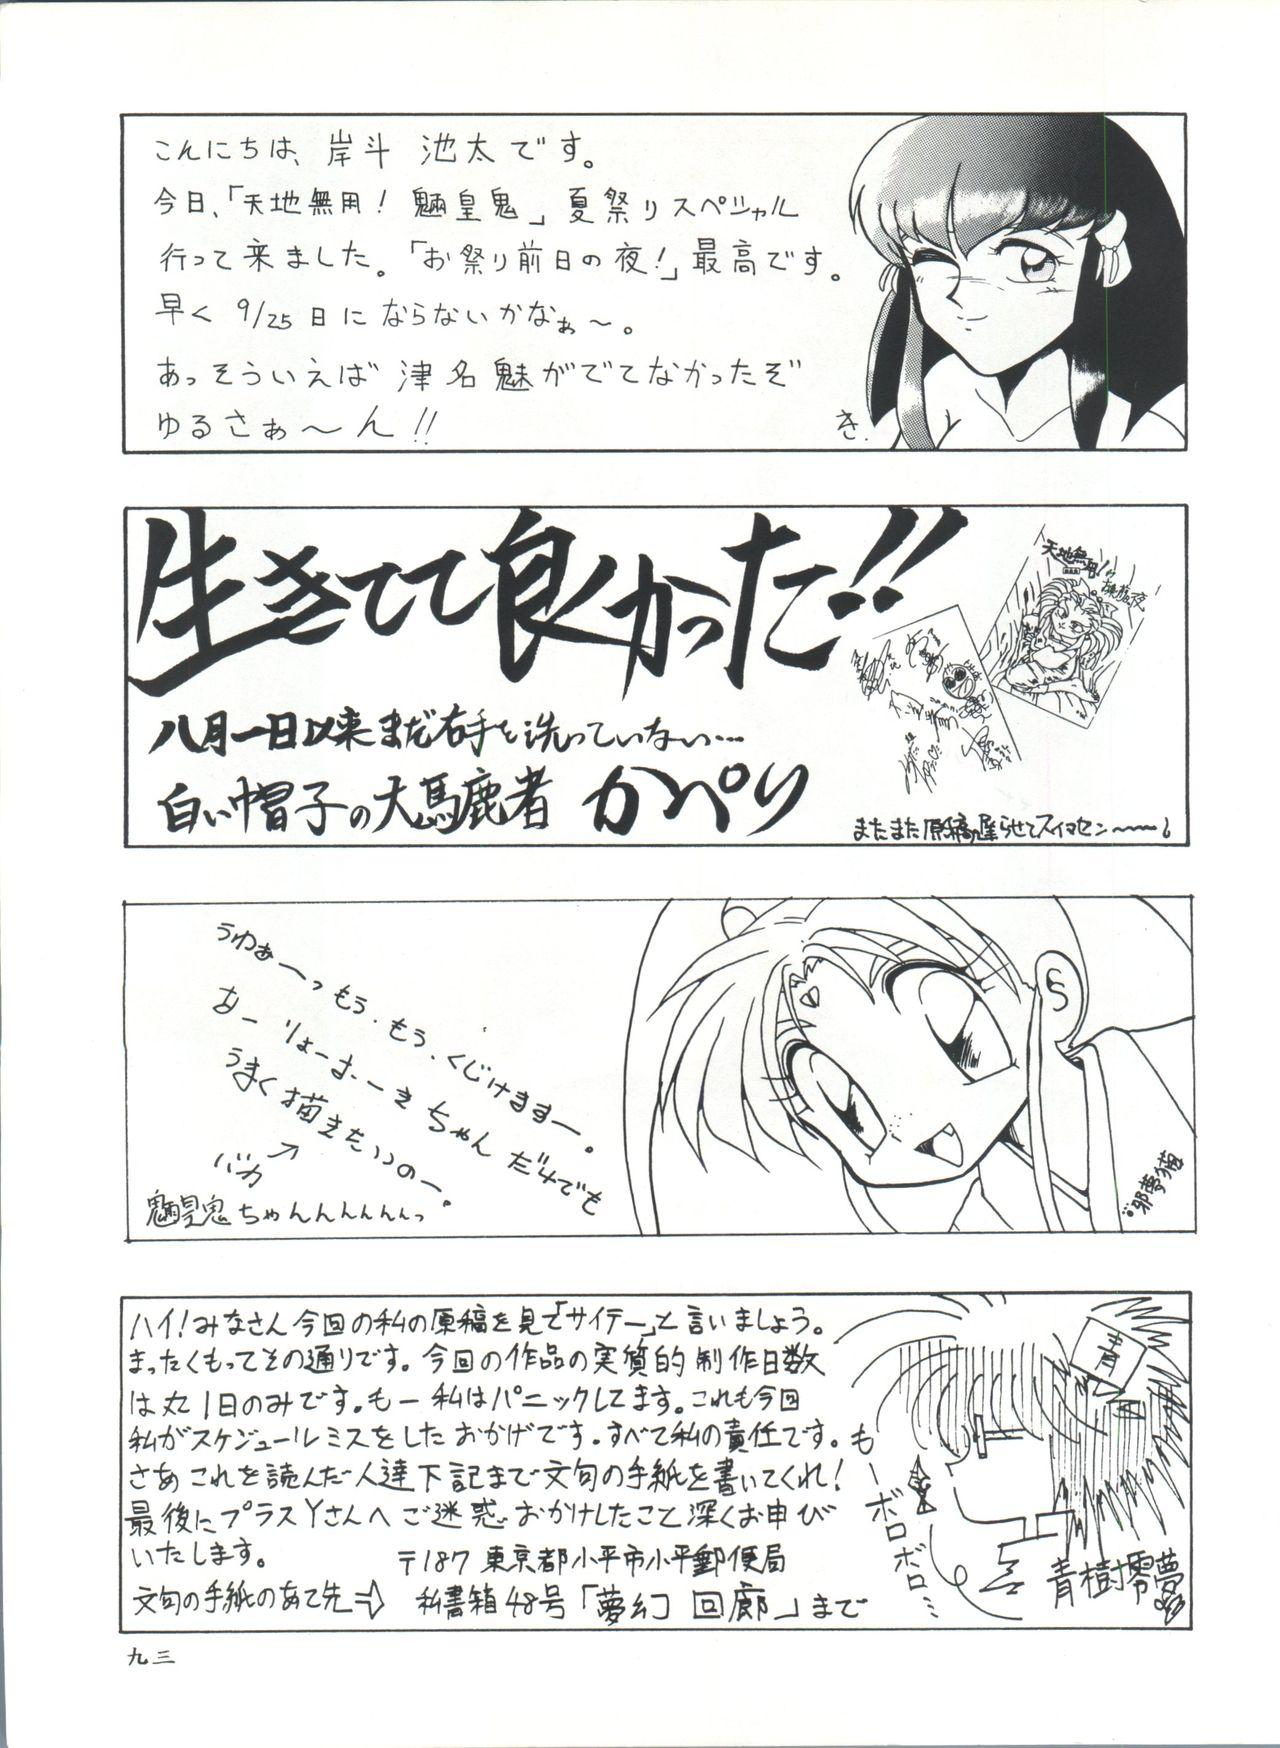 Plus-Y Vol. 11 Konpeki no Tsukiyo 93